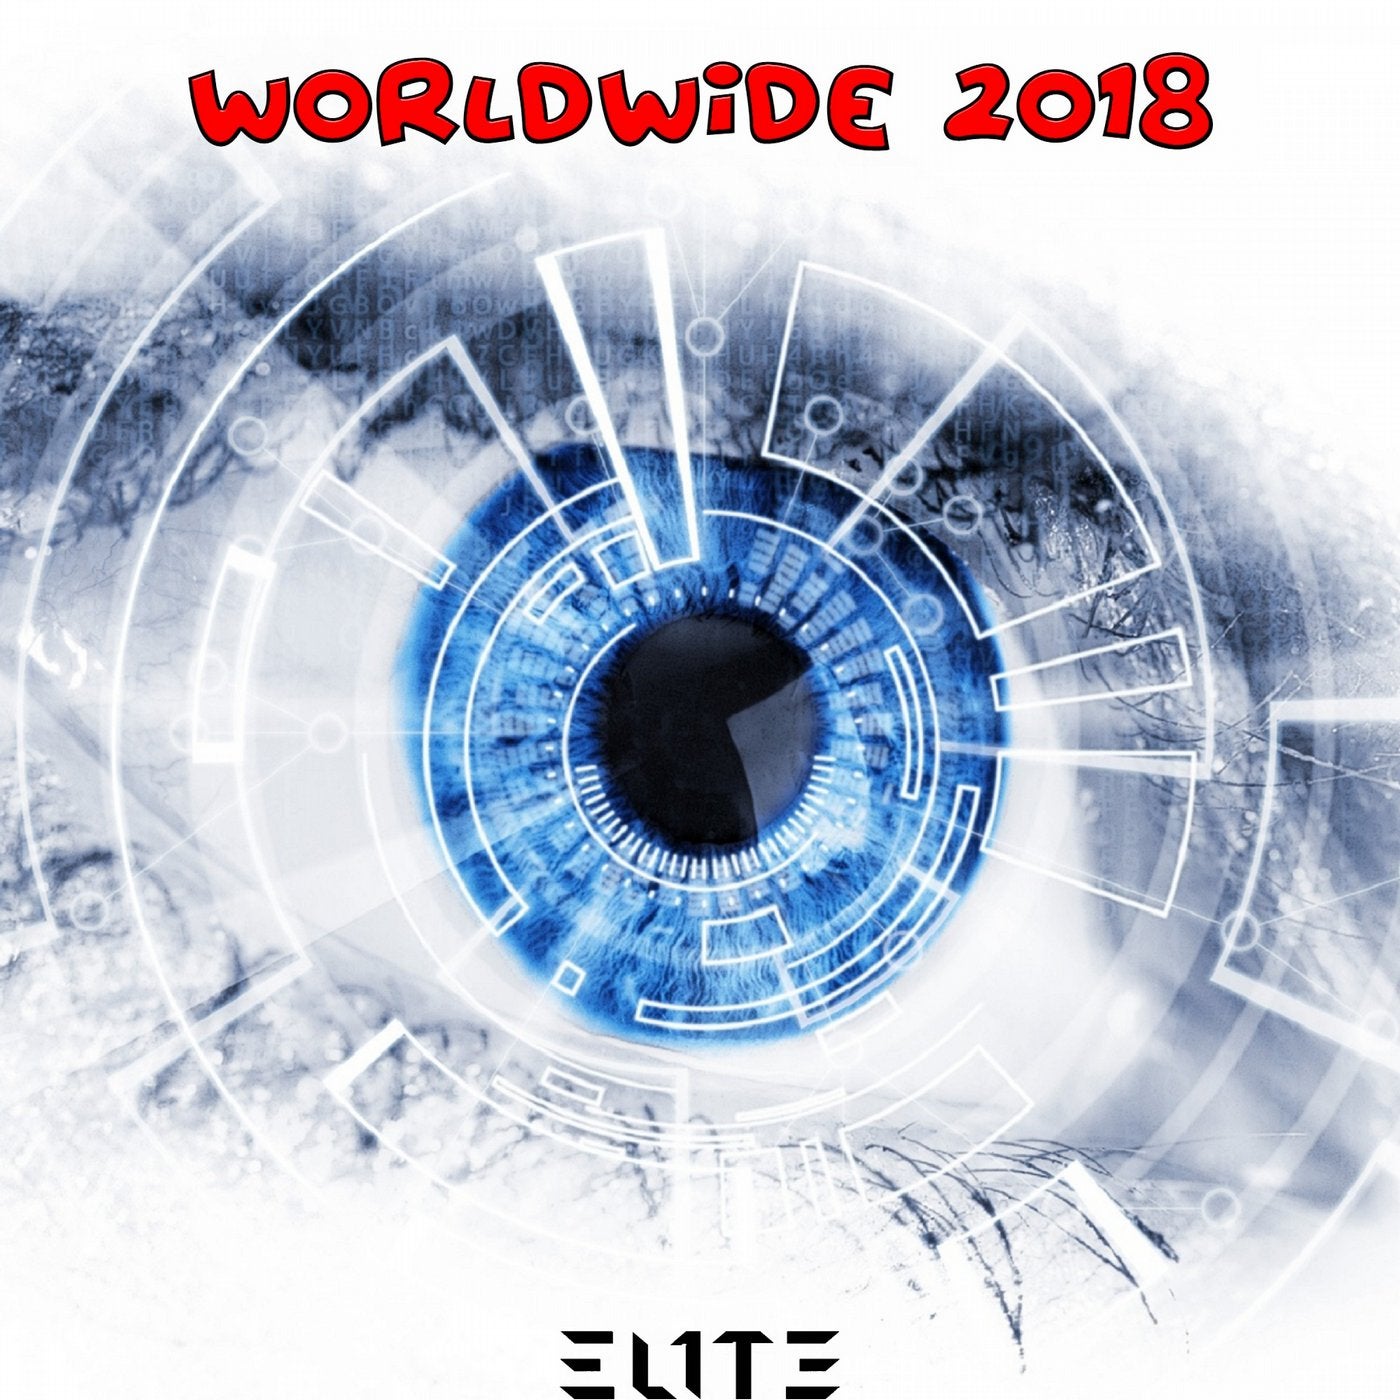 Worldwide 2018